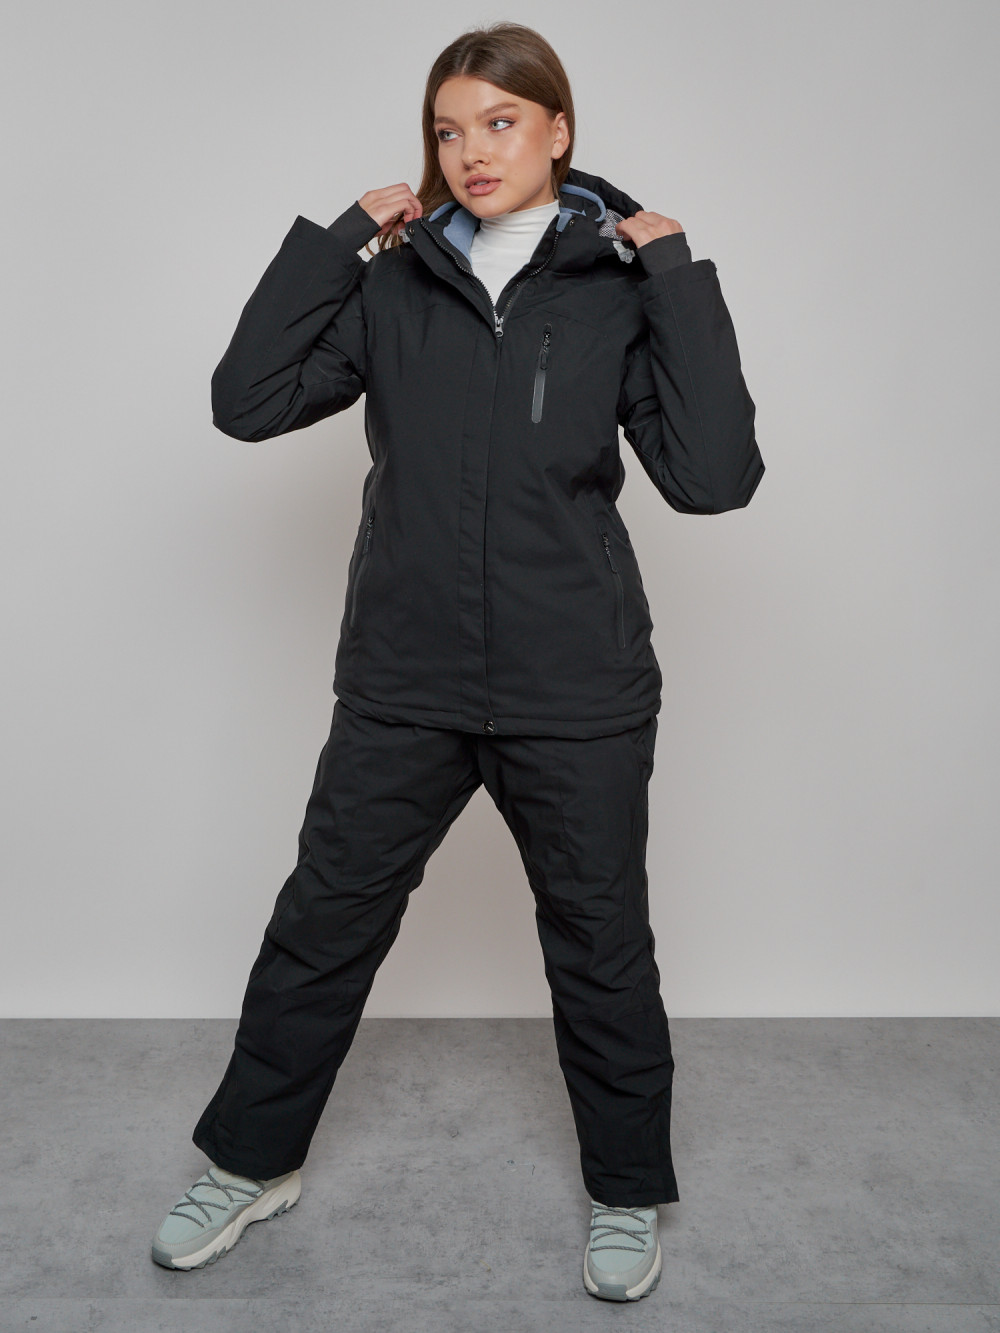 Горнолыжный костюм женский зимний черного цвета 02002Ch